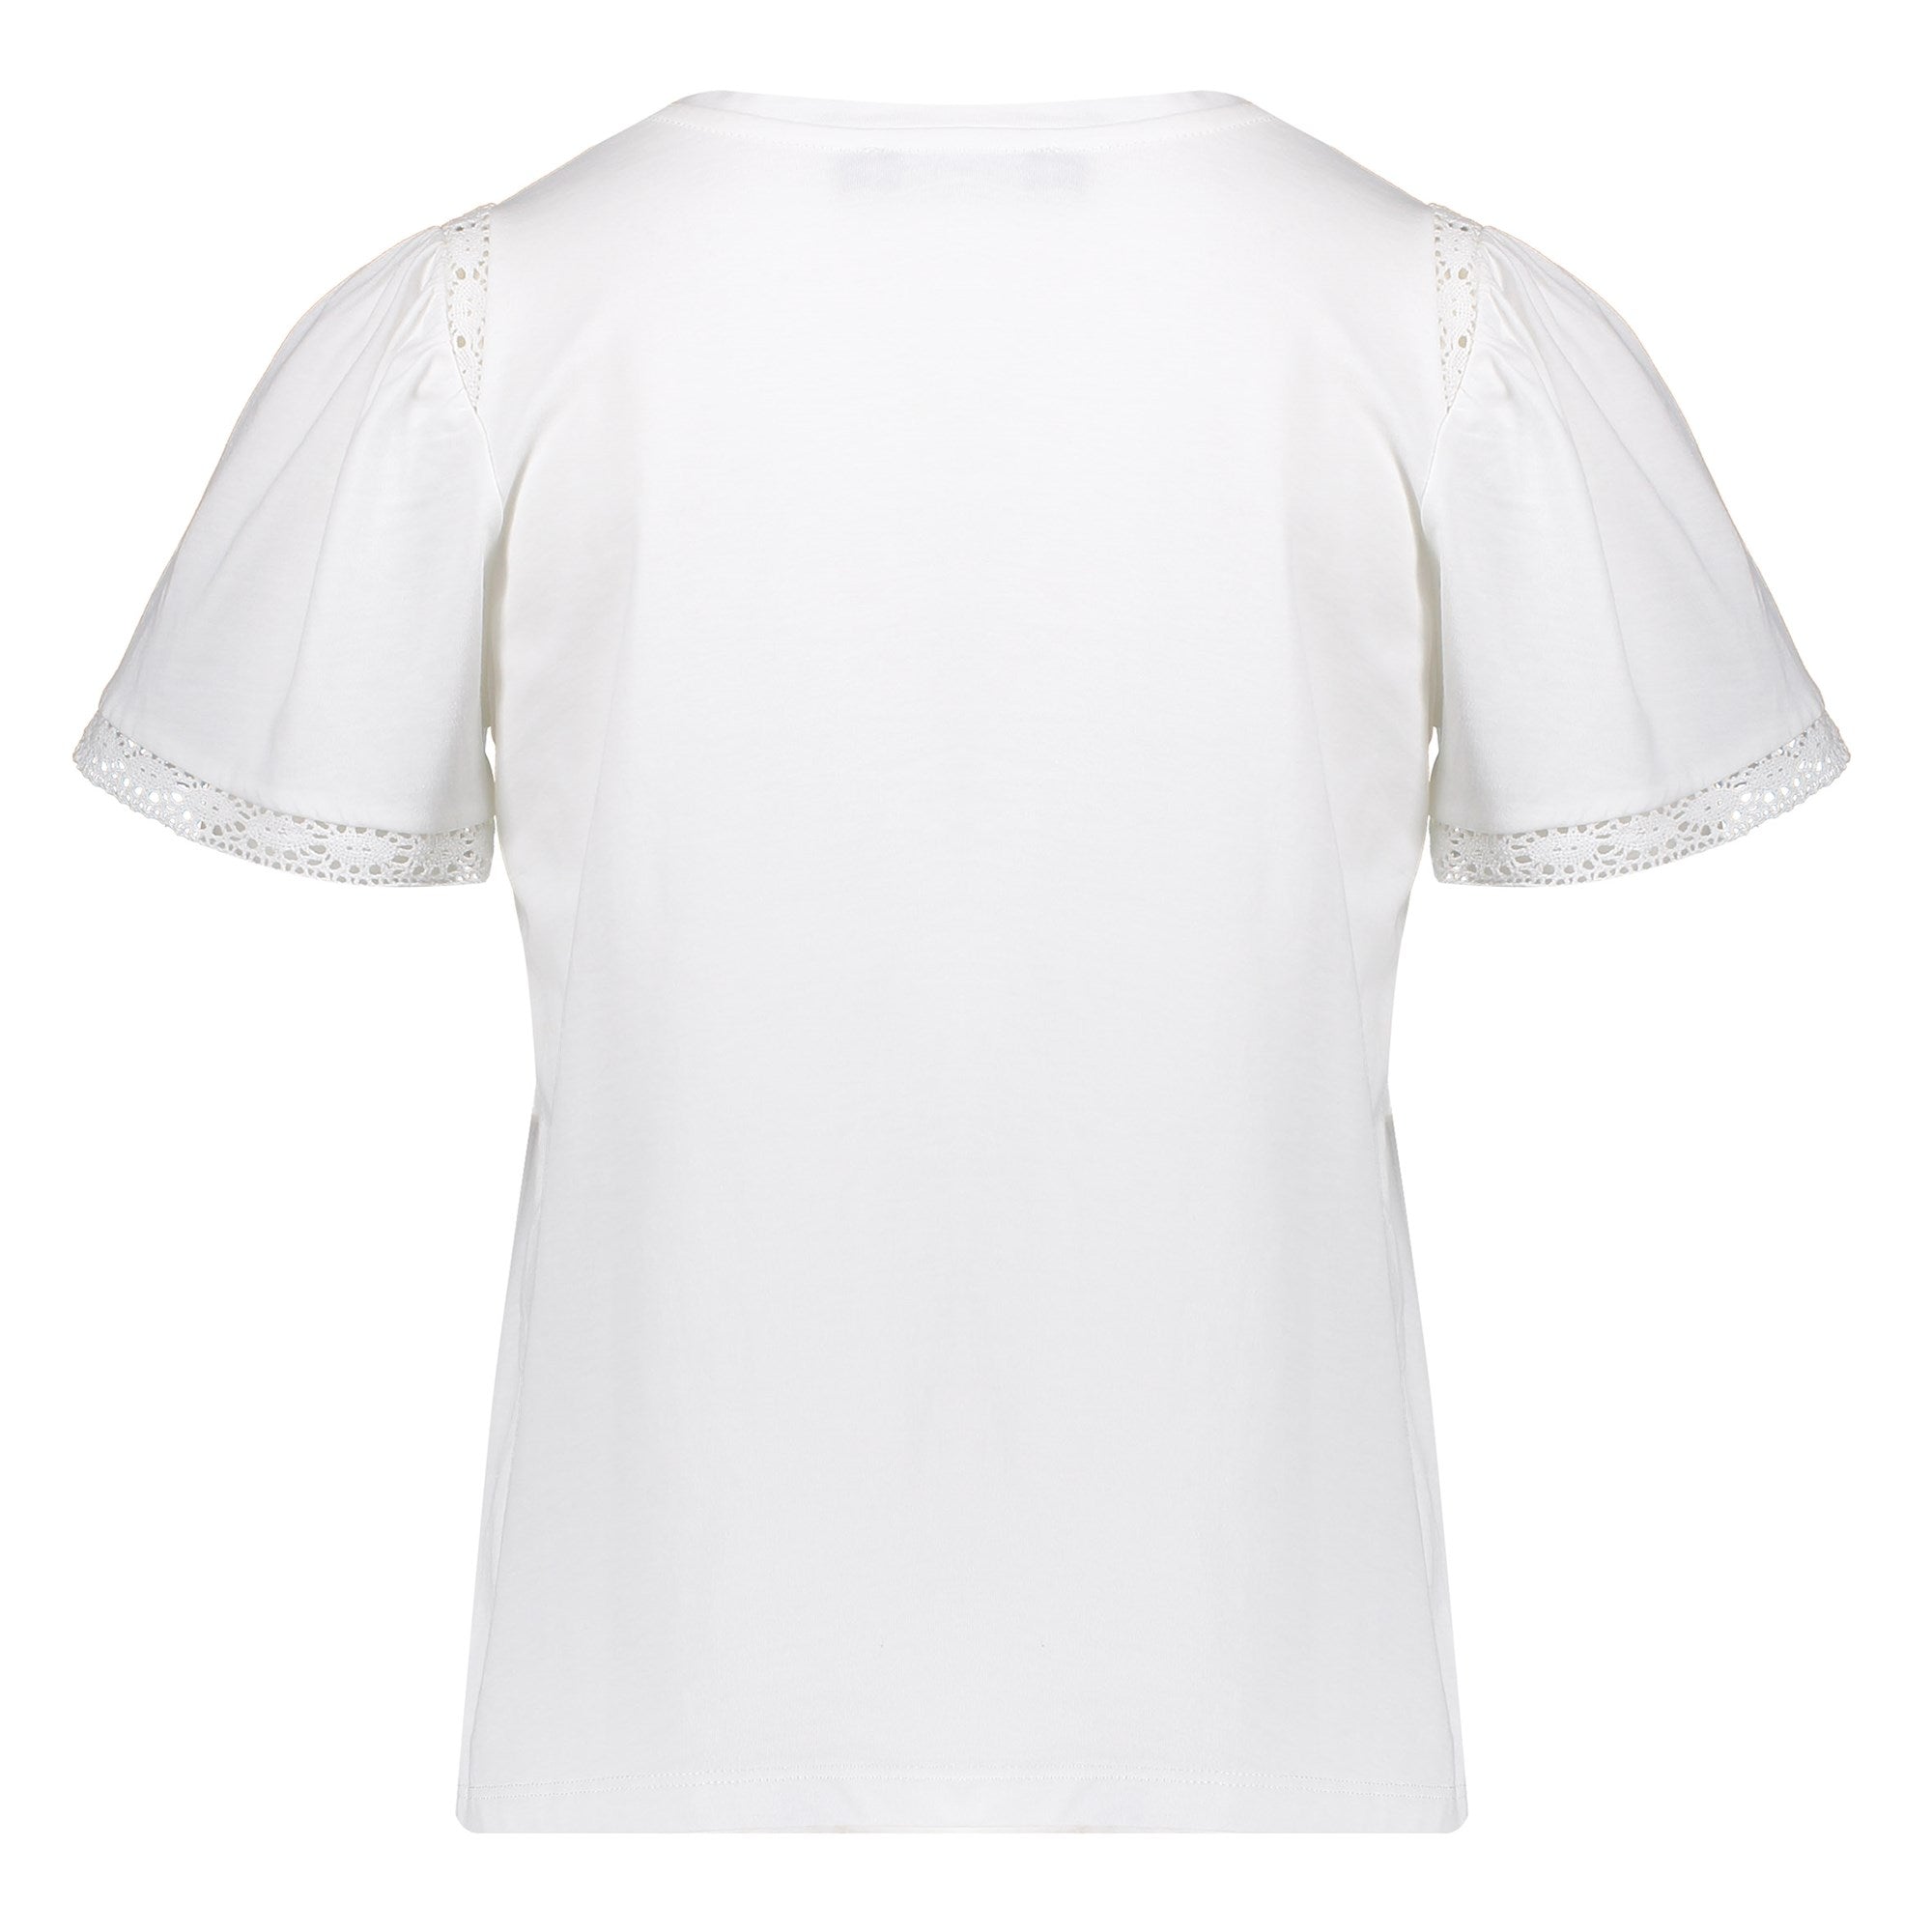 Meisjes T-shirt with lace van Geisha in de kleur 000010 - off-white in maat 176.